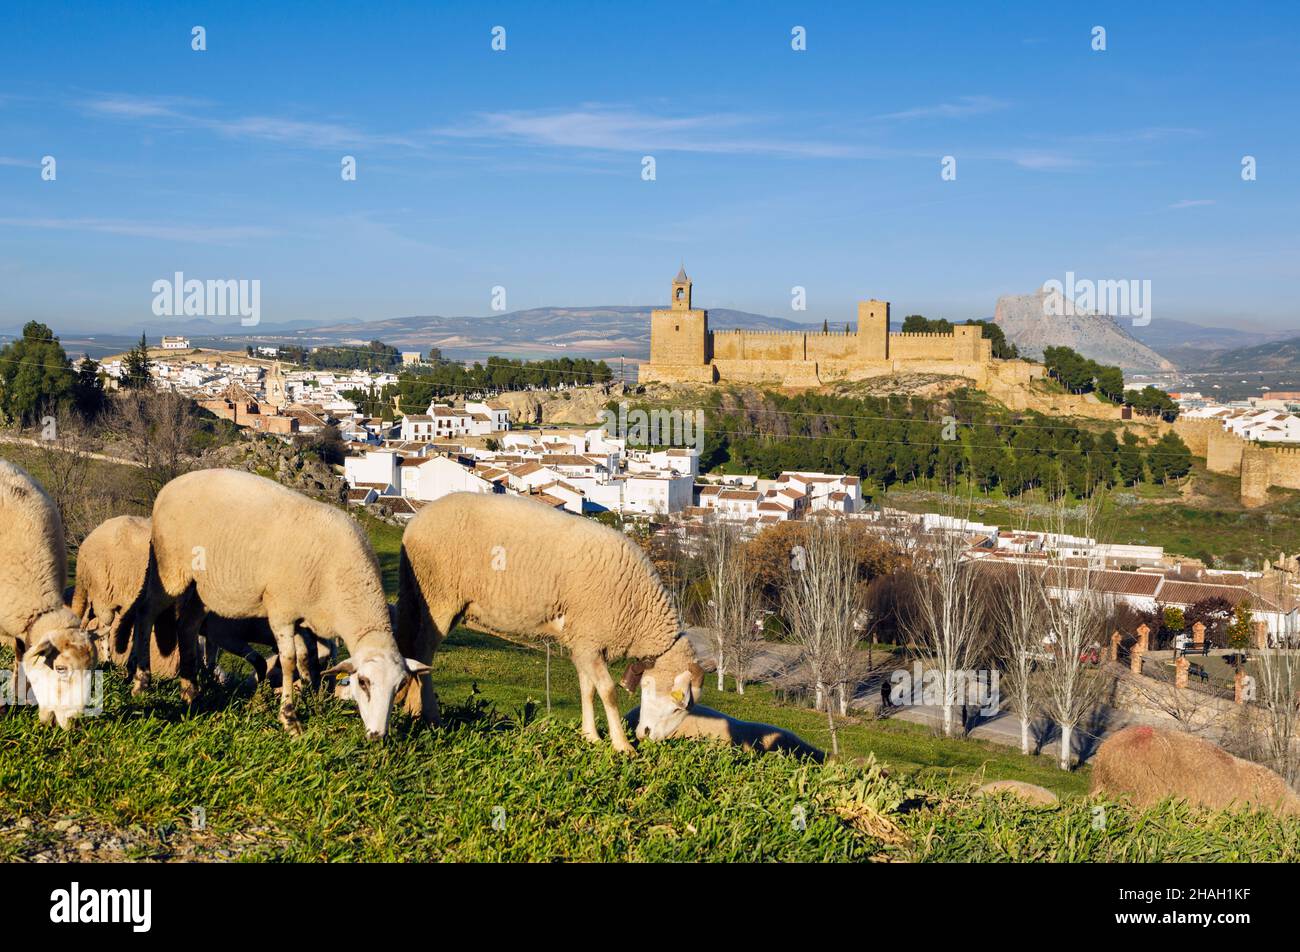 Antequera, Provinz Malaga, Andalusien, Südspanien. Blick über weidende Schafe auf die alcazaba oder die Burg. Hinter der Burg ist das Gesicht-Sha zu sehen Stockfoto